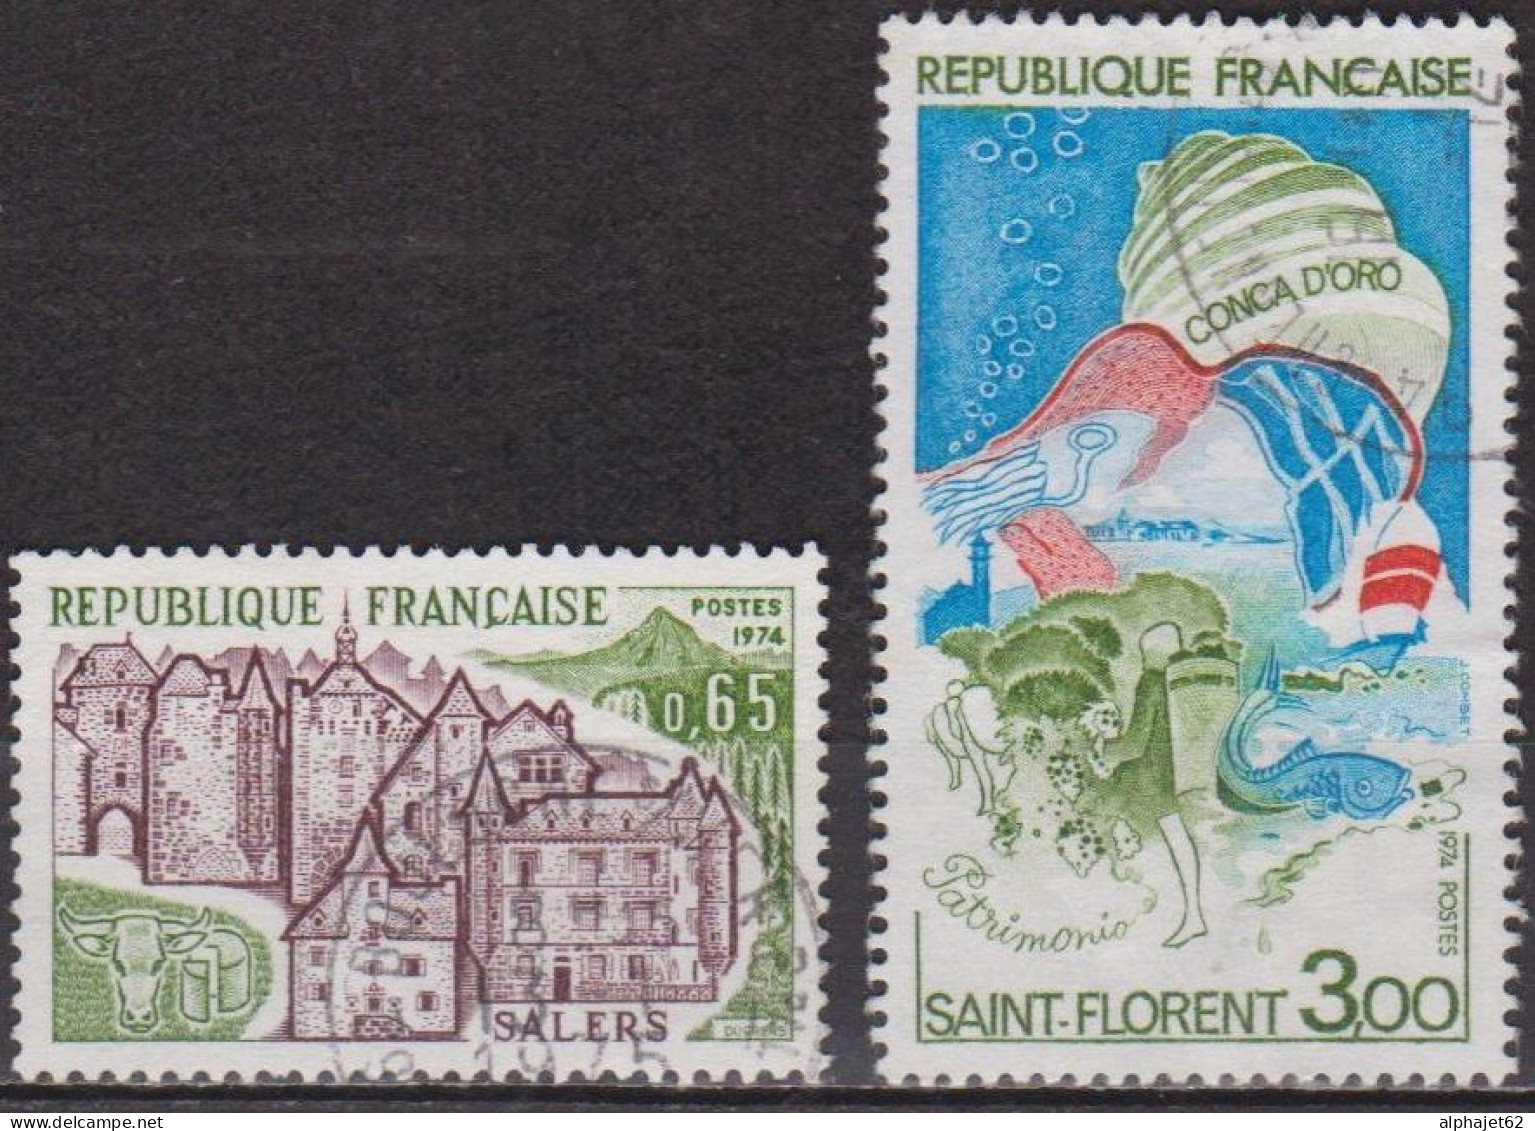 Série Touristique - FRANCE - Salers - Golfe De Saint Florent, Corse - N° 1793-1794 - 1974 - Gebraucht